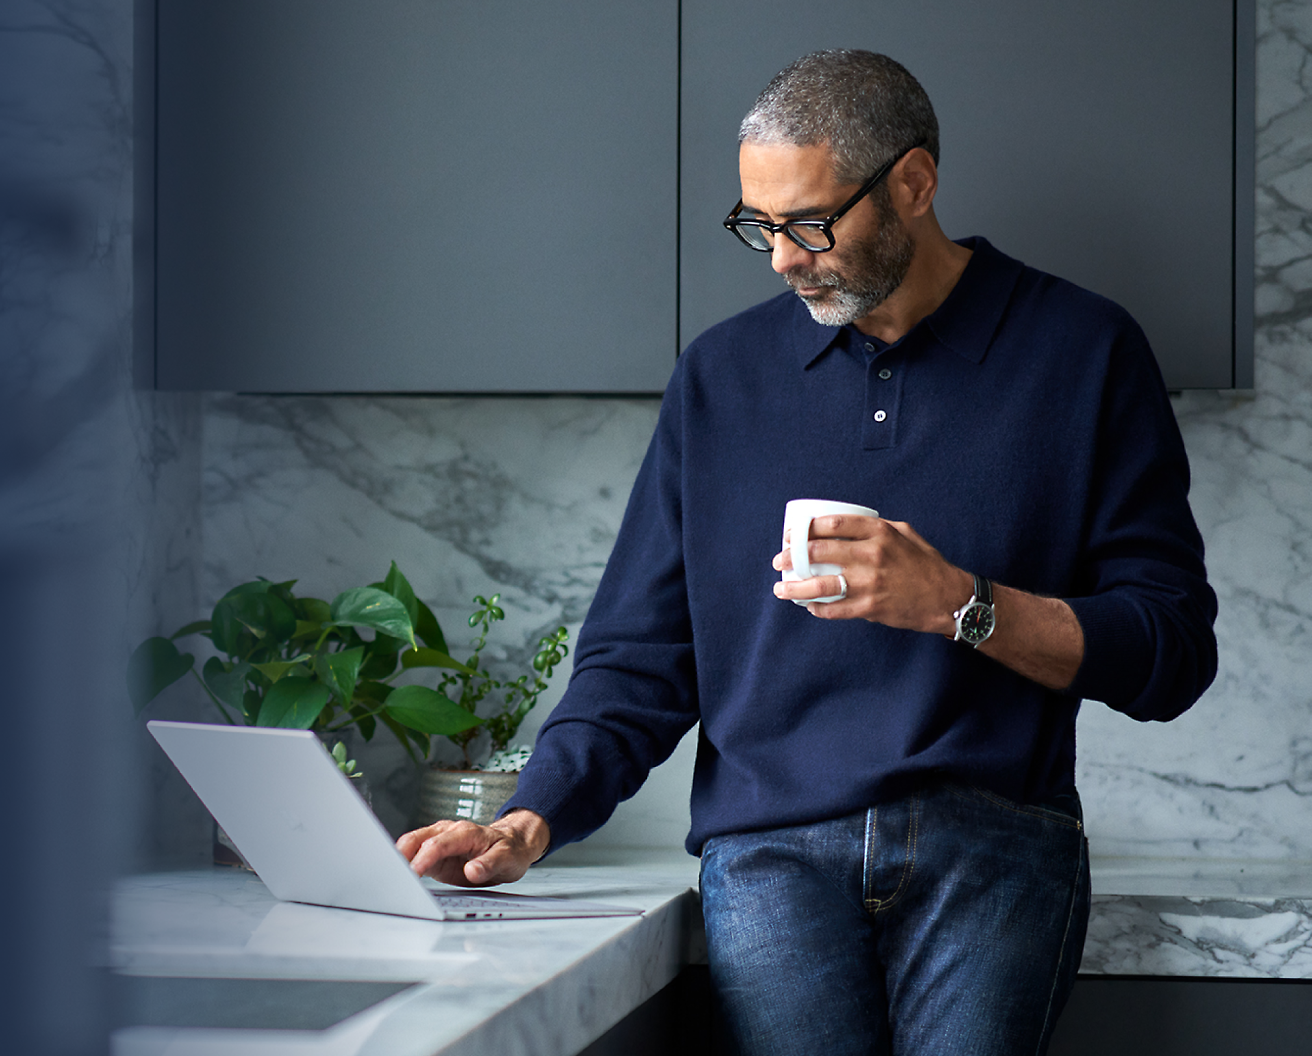 Homme d'âge moyen avec des lunettes, tenant une tasse de café, utilisant un ordinateur portable dans une cuisine moderne.